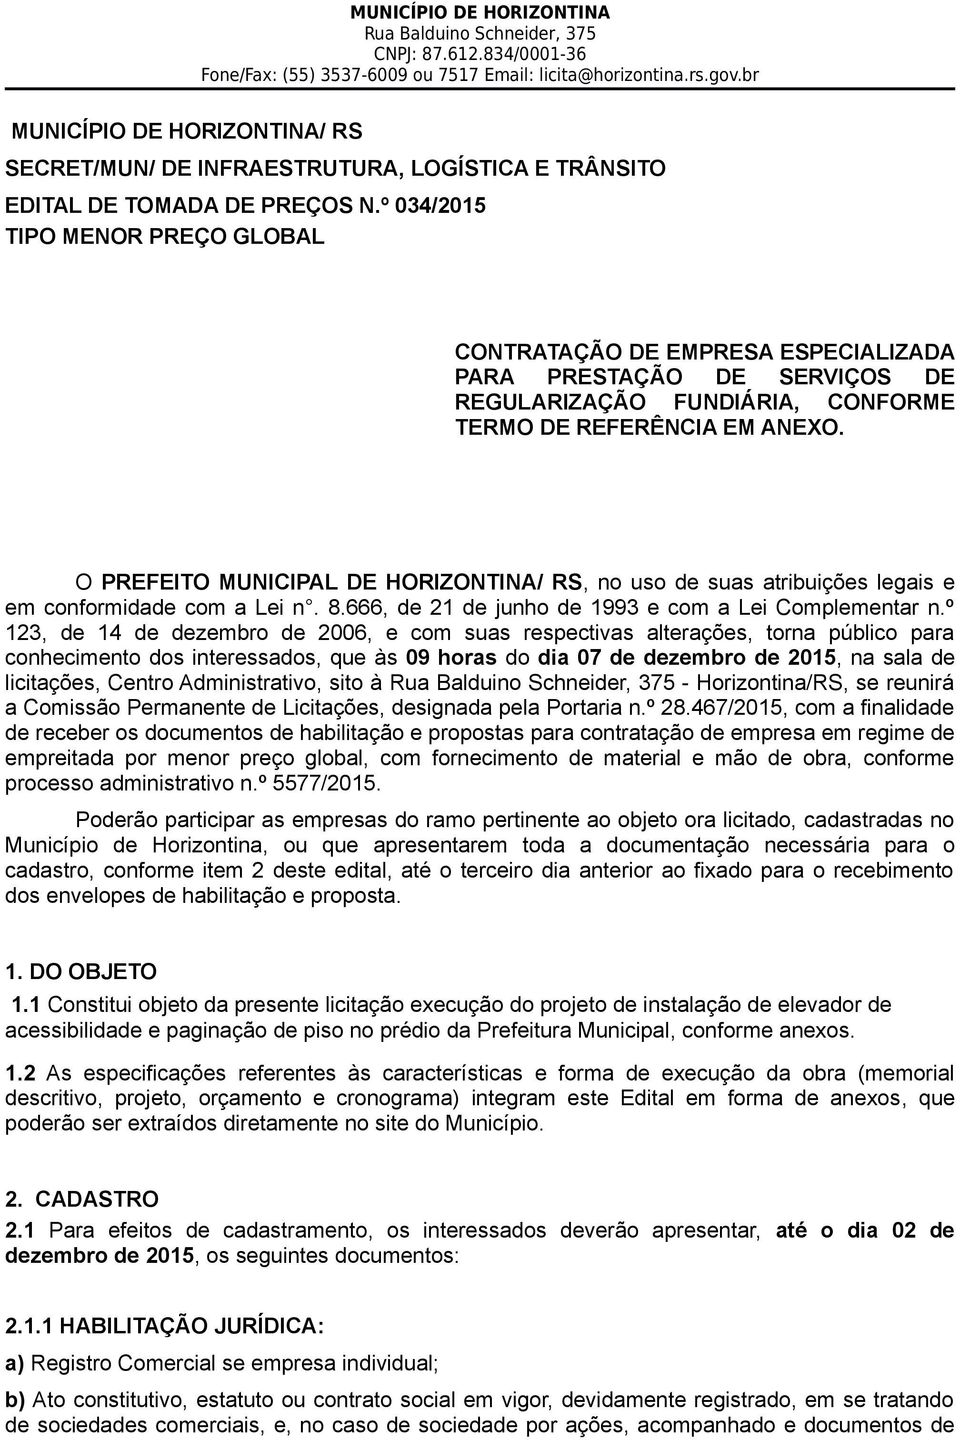 O PREFEITO MUNICIPAL DE HORIZONTINA/ RS, no uso de suas atribuições legais e em conformidade com a Lei n. 8.666, de 21 de junho de 1993 e com a Lei Complementar n.